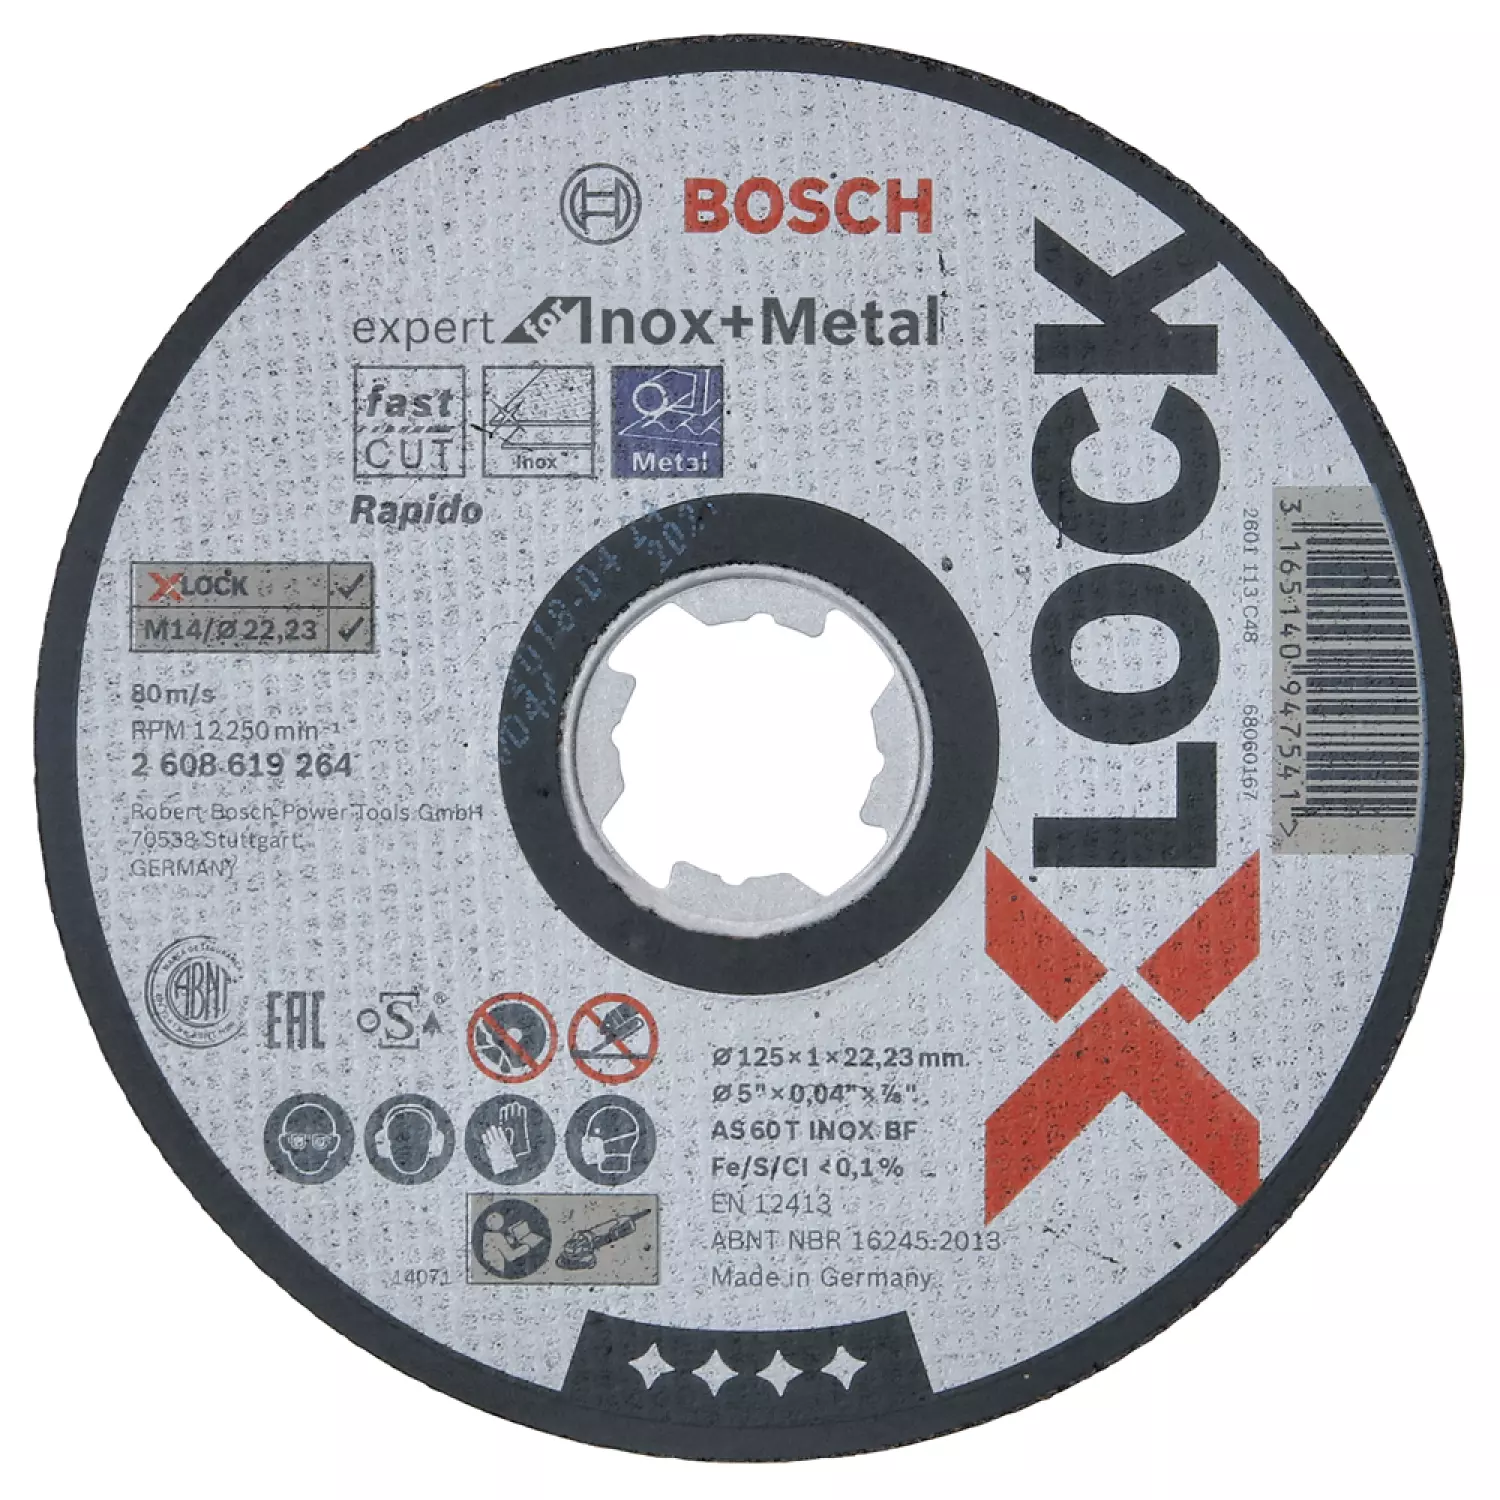 Bosch 2608619264 X-Lock Slijpschijf Expert for Inox & Metal - Recht - 125mm-image